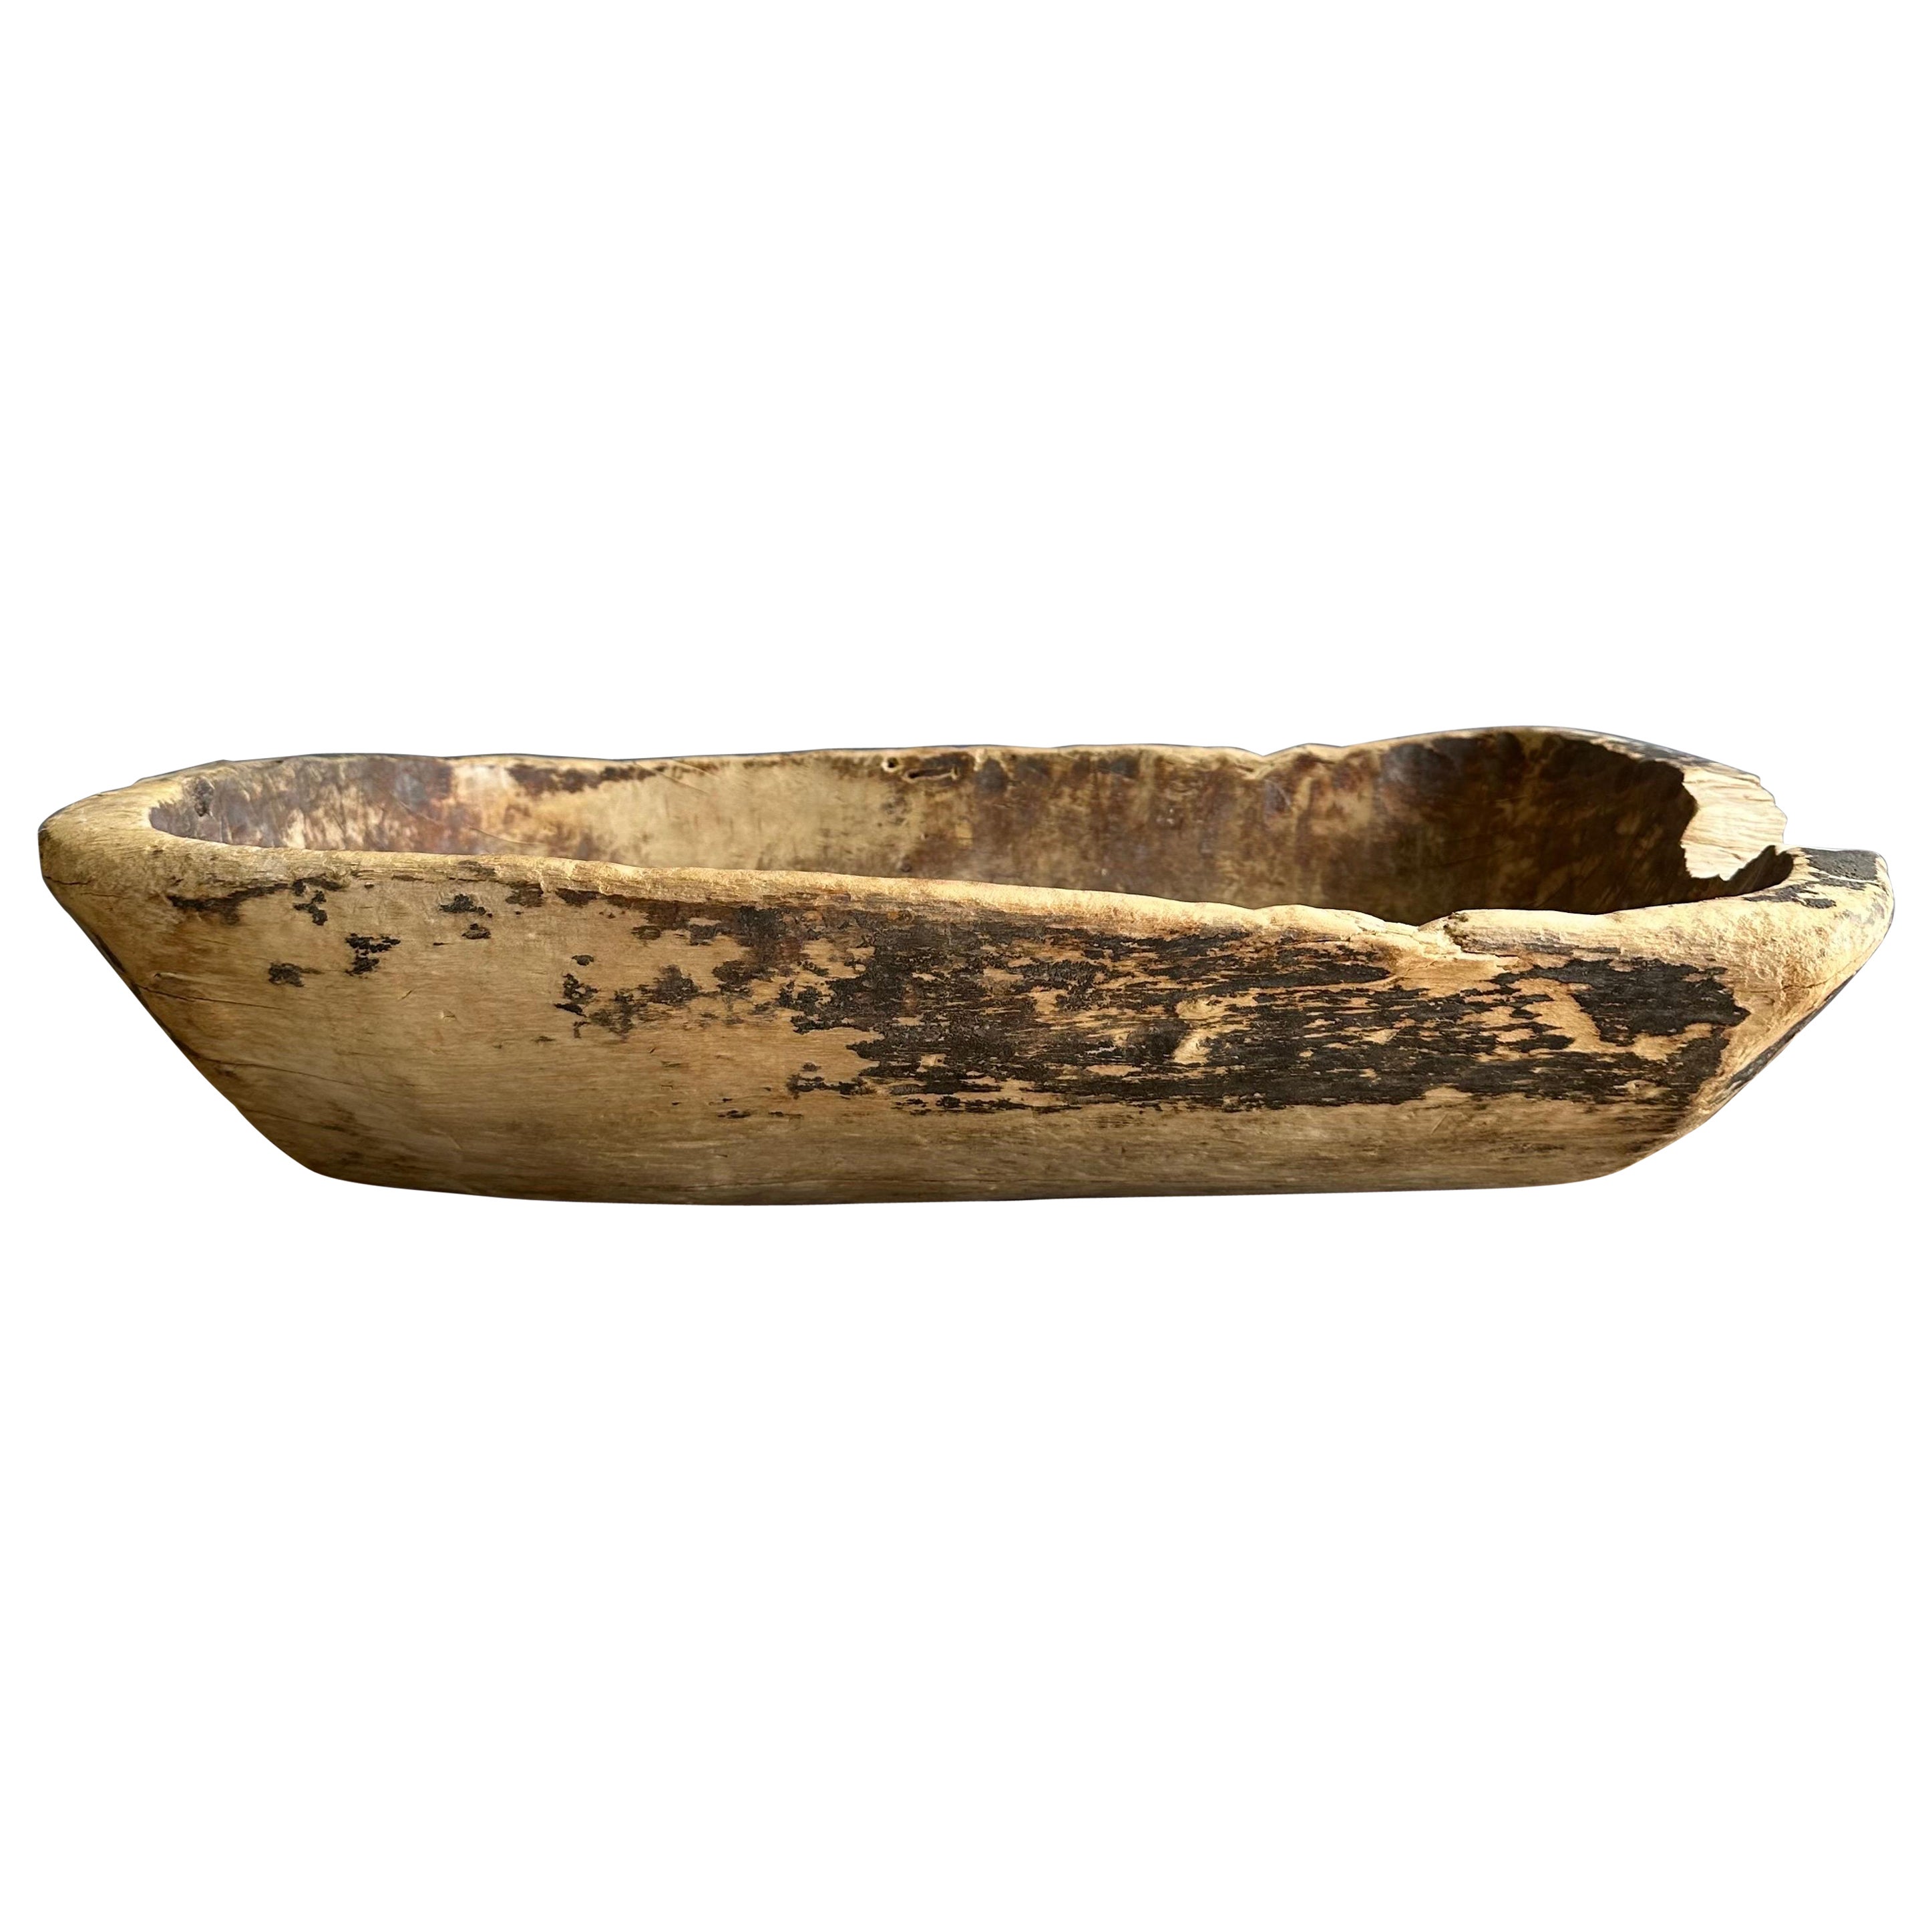 Vintage Wood Trough Decorative Bowl For Sale